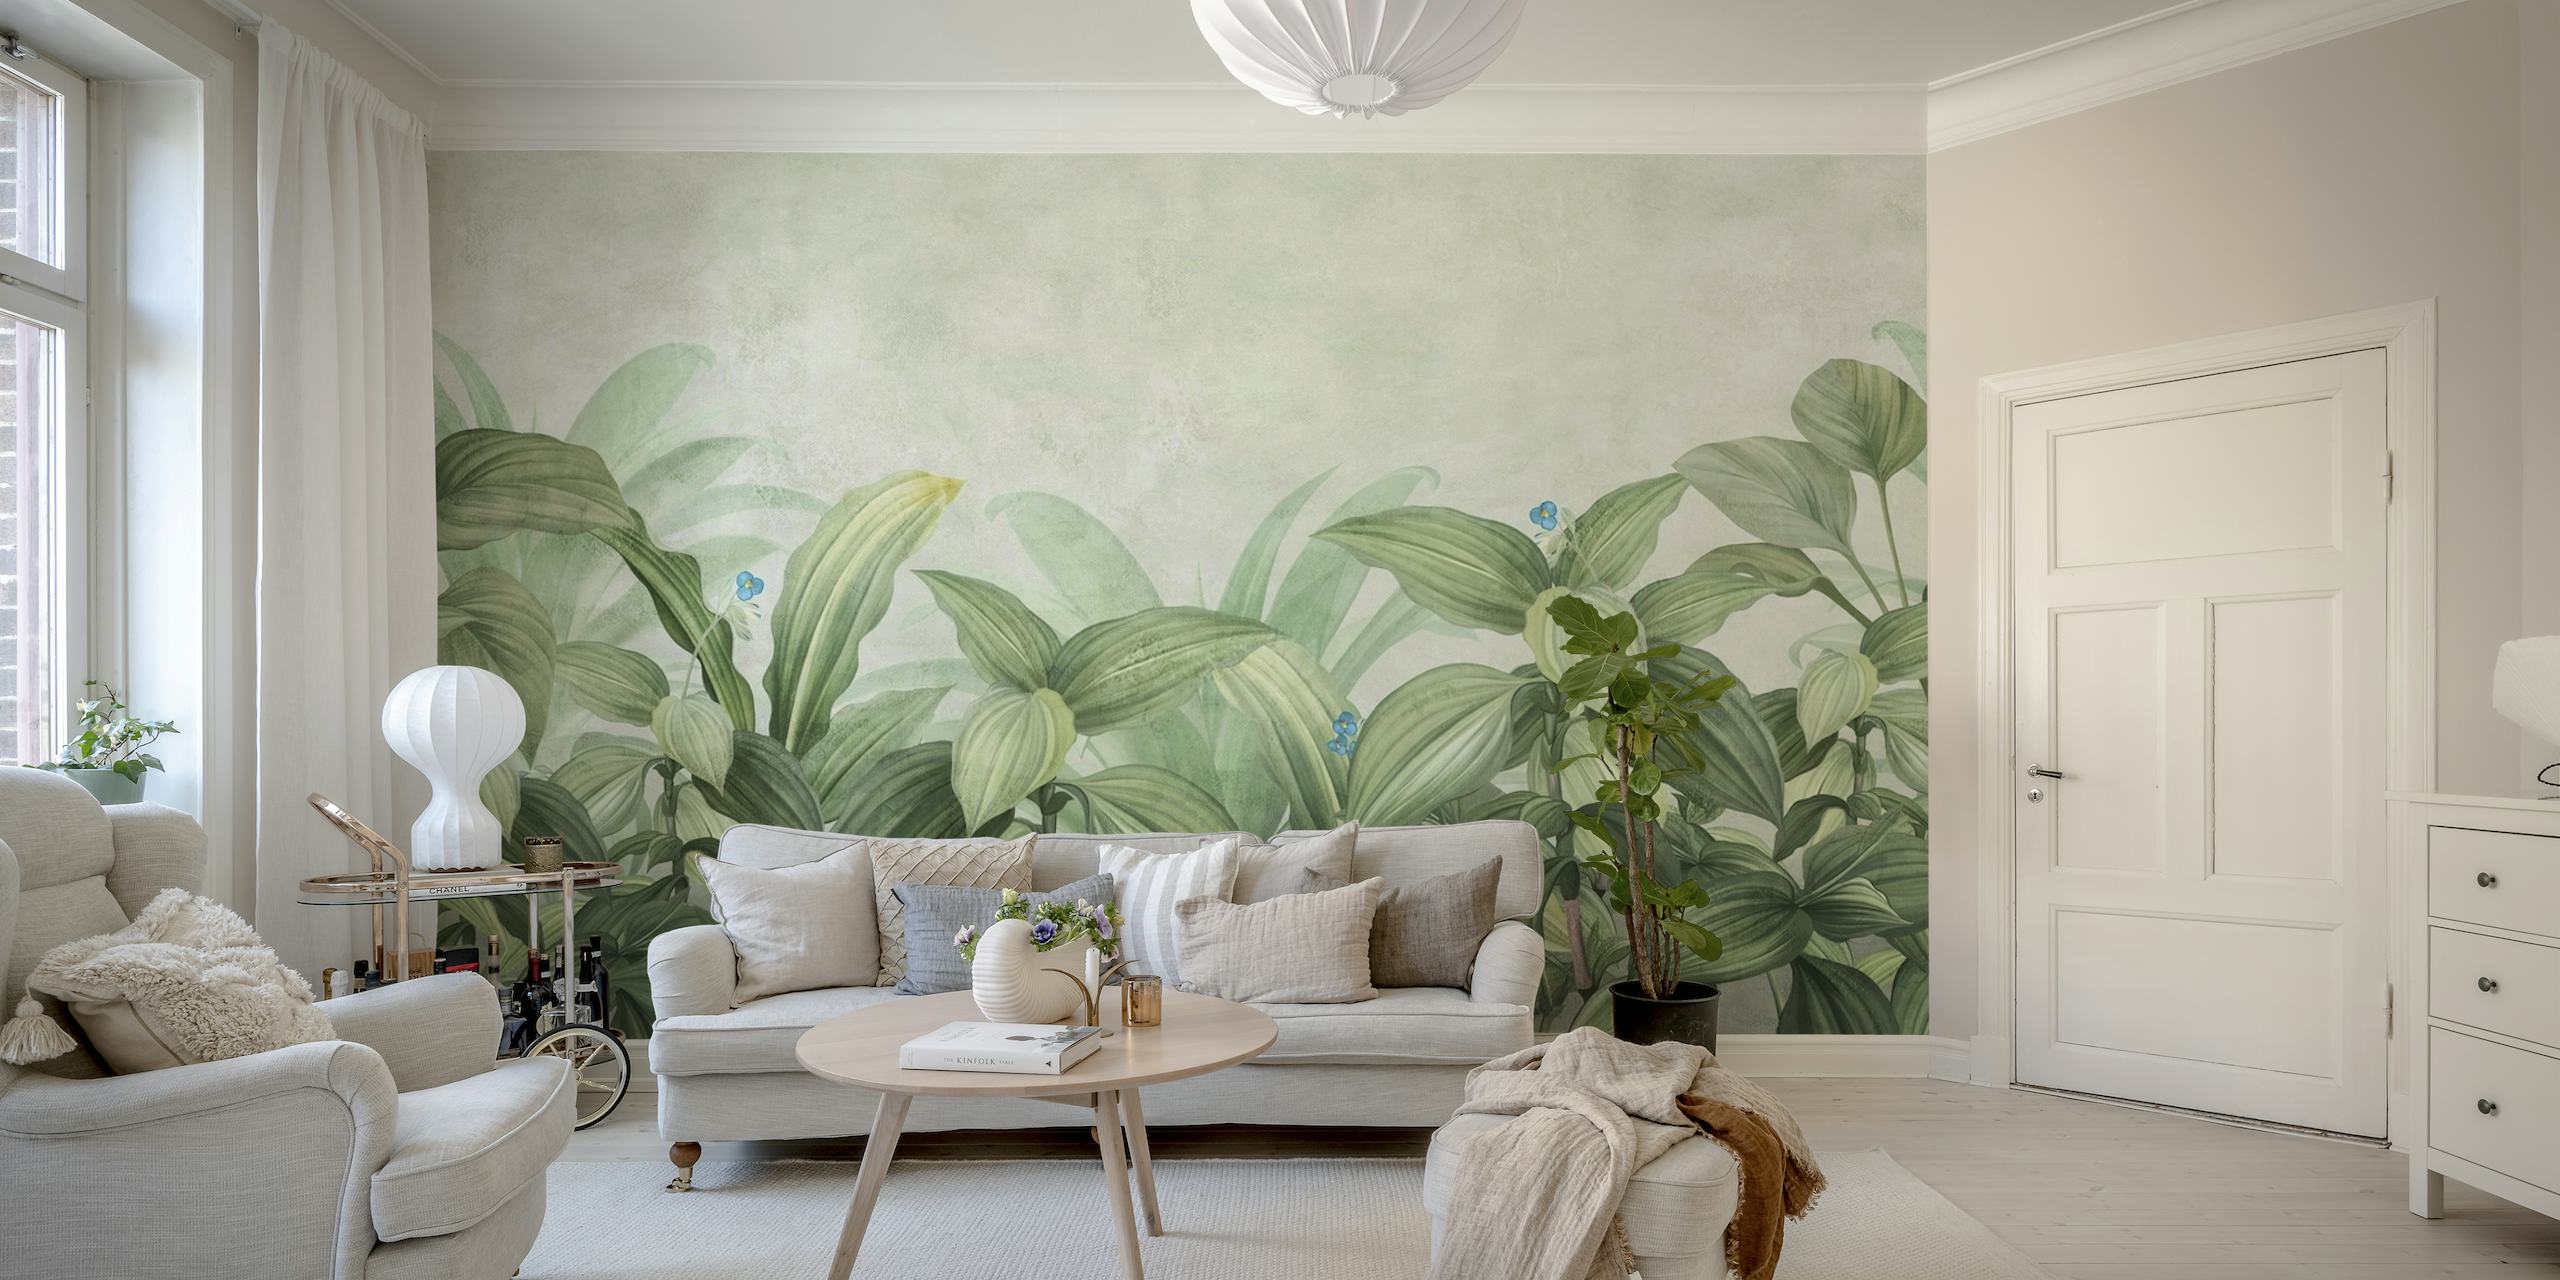 Elegante decorazione murale con fogliame tropicale con foglie verdi lussureggianti e sottili accenti floreali